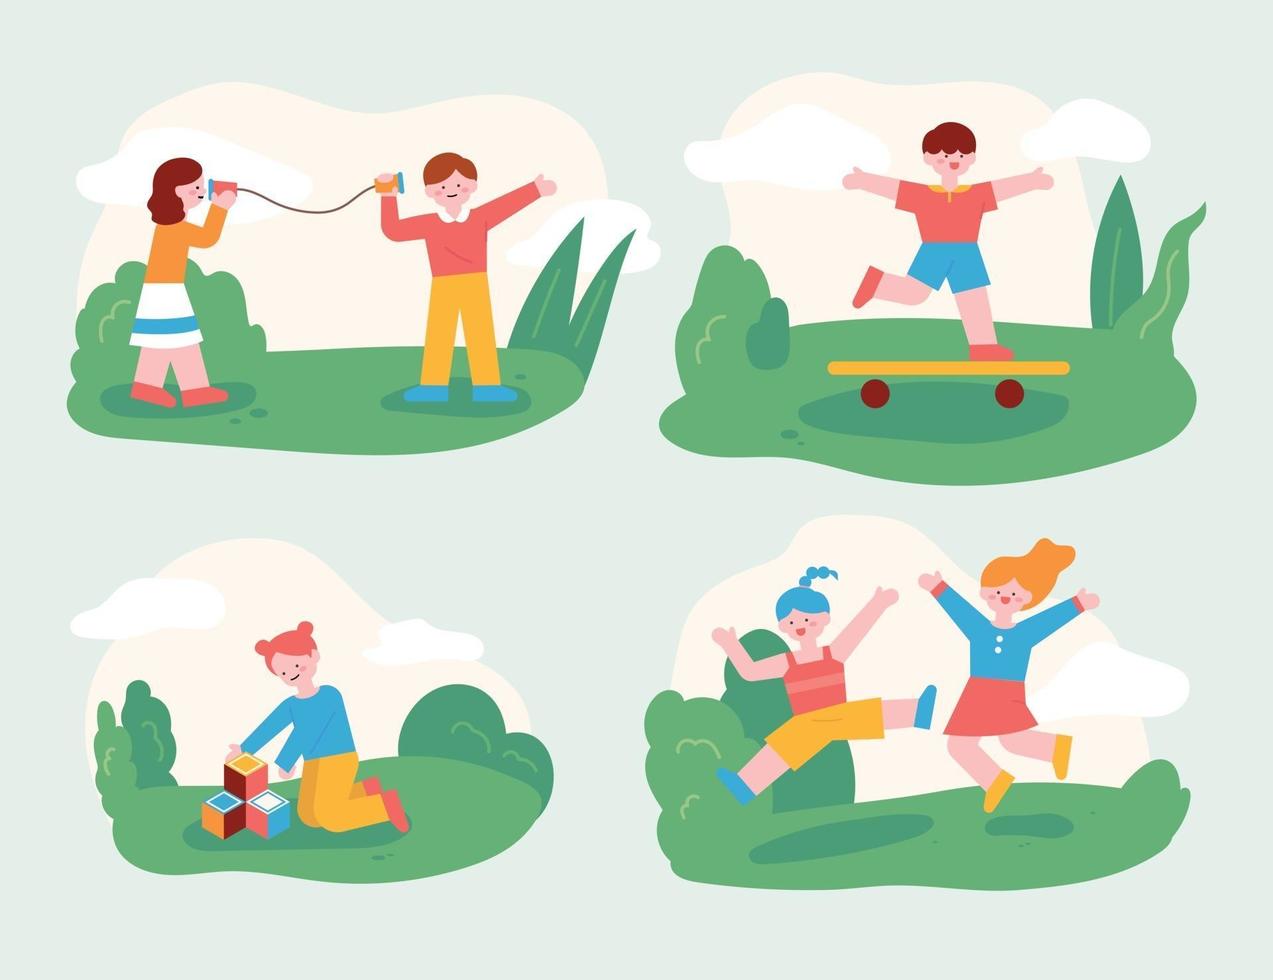 los niños juegan con sus amigos en el parque. niños que juegan con amigos y niños que juegan bien solos. Ilustración de vector mínimo de estilo de diseño plano.